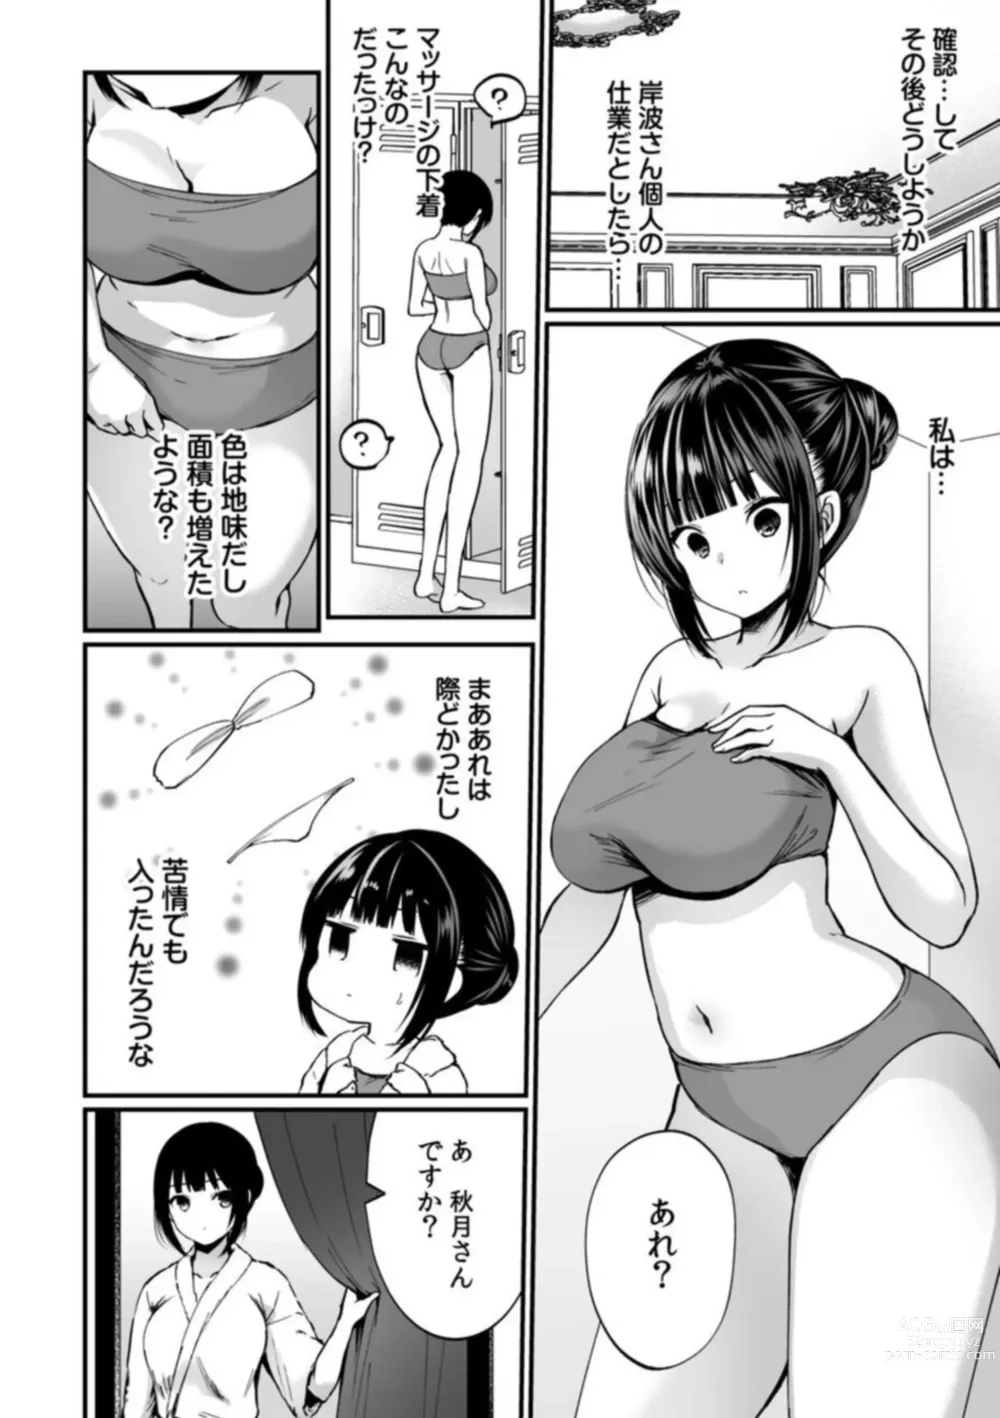 Page 6 of manga Ikasaresugite Chousa Murii...!